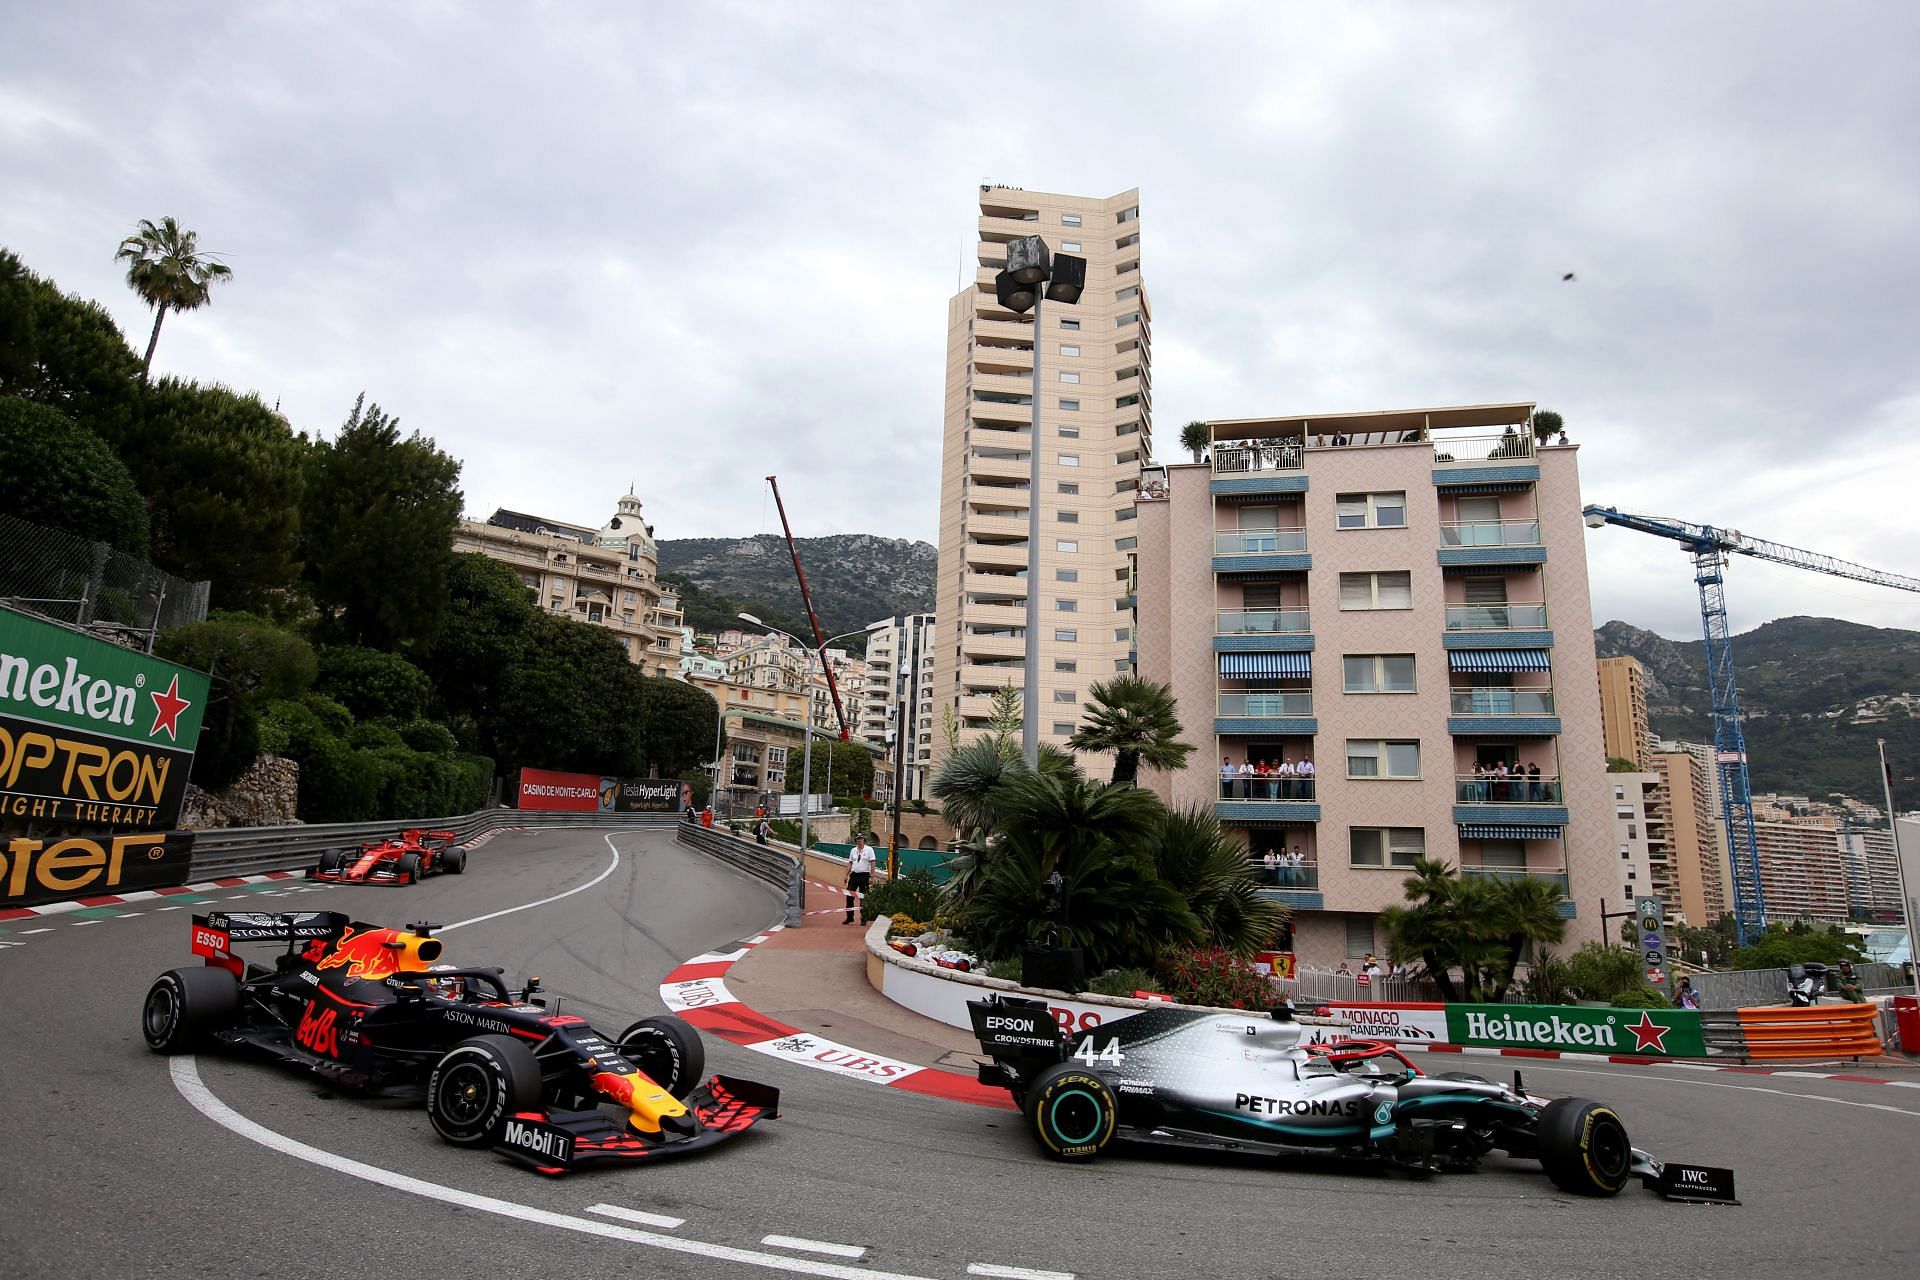 Monaco GP has always been the crown jewel of the F1 calendar